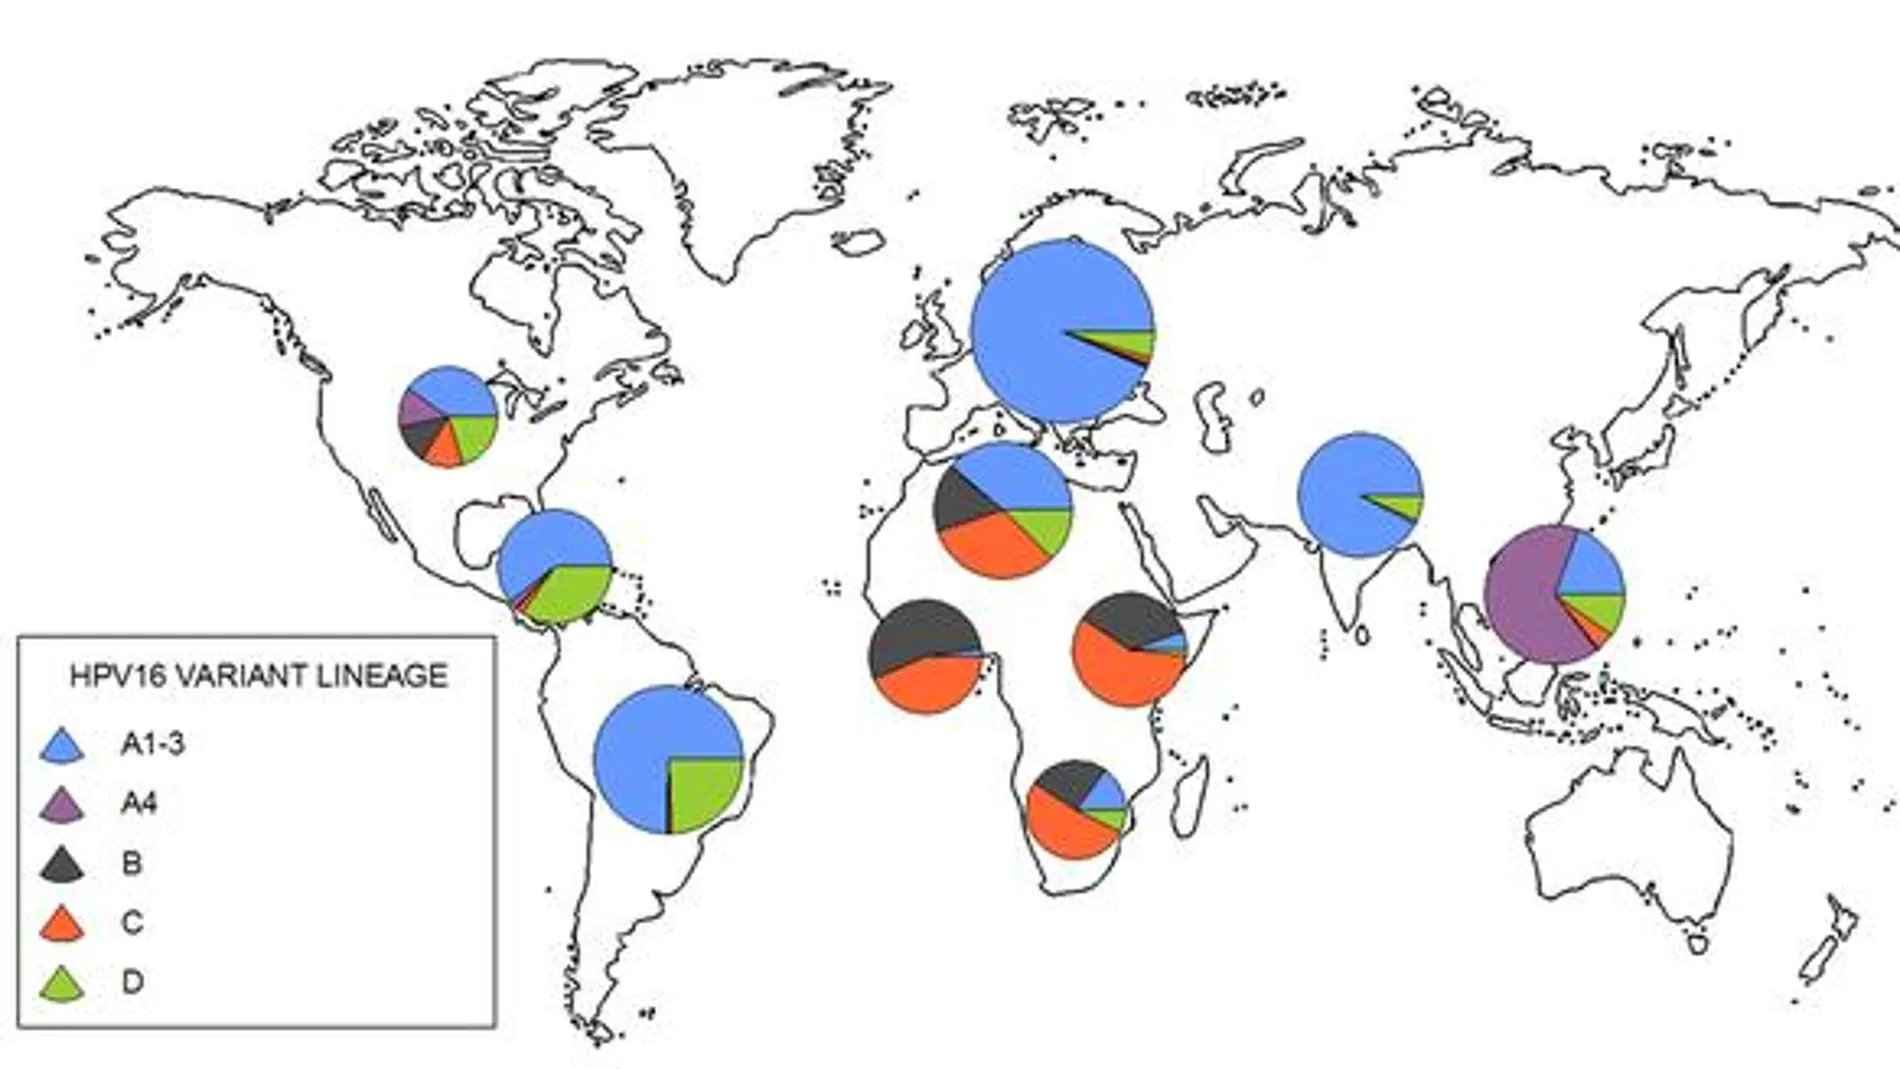 Distribución geográfica de los cuatro tipos de papilomavirus HPV16 estudiados. Imagen: MBE